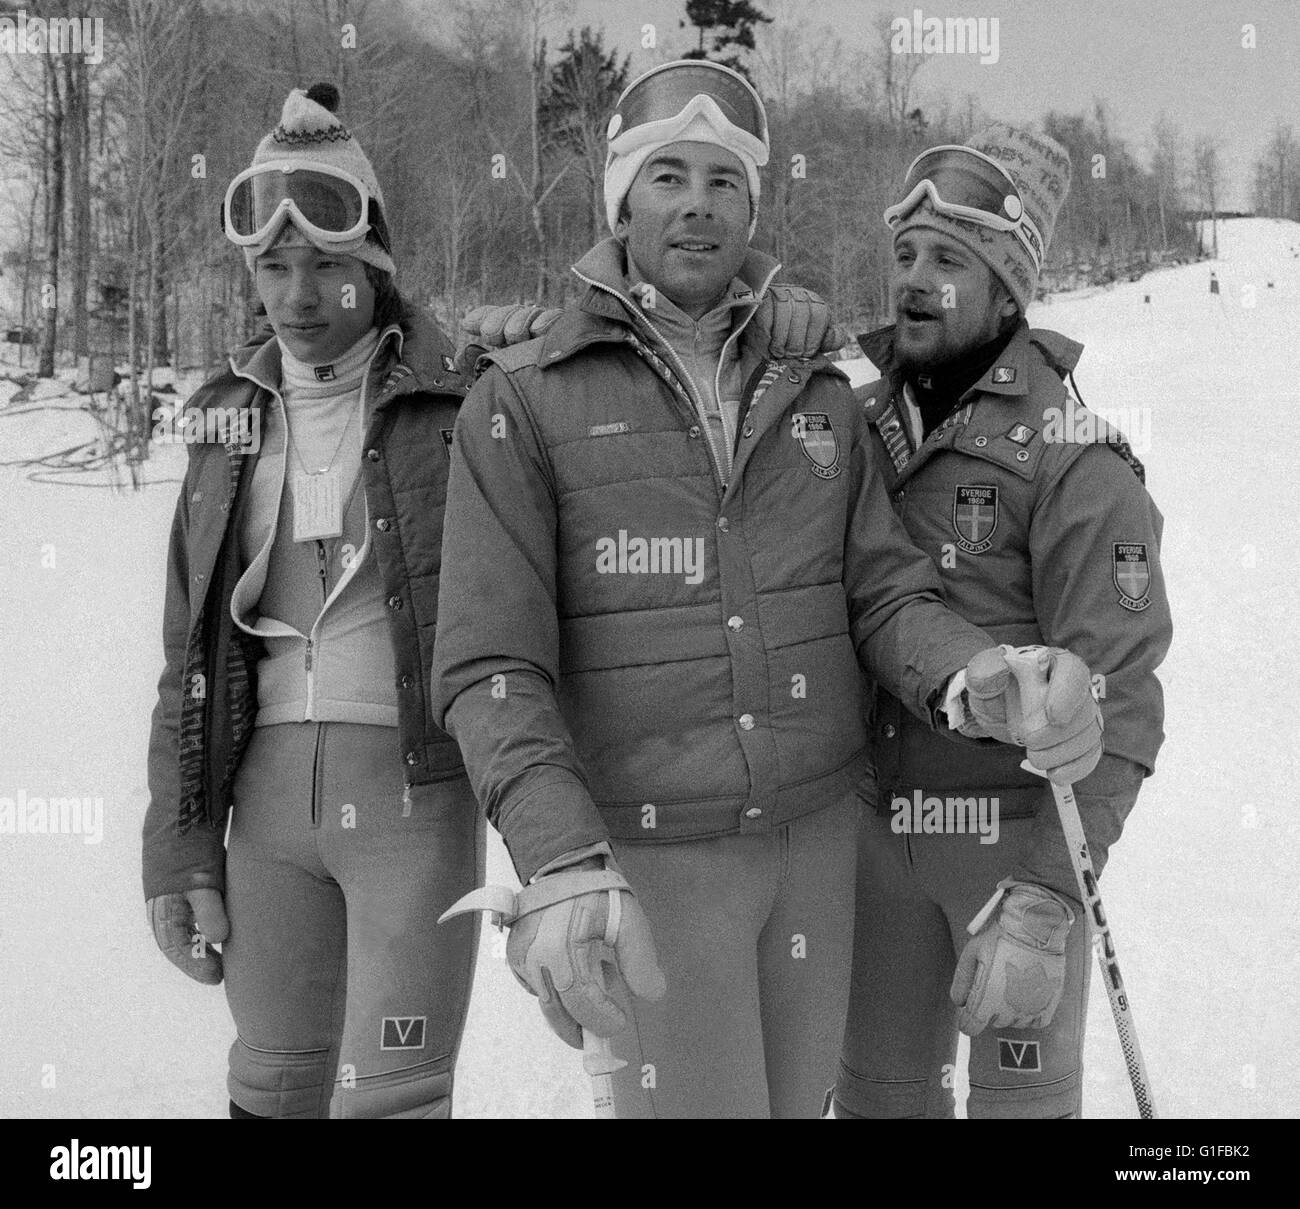 INGEMAR STENMARK mit seinem TeammatesTorsten Jakobsson und Stig Strand  Stockfotografie - Alamy